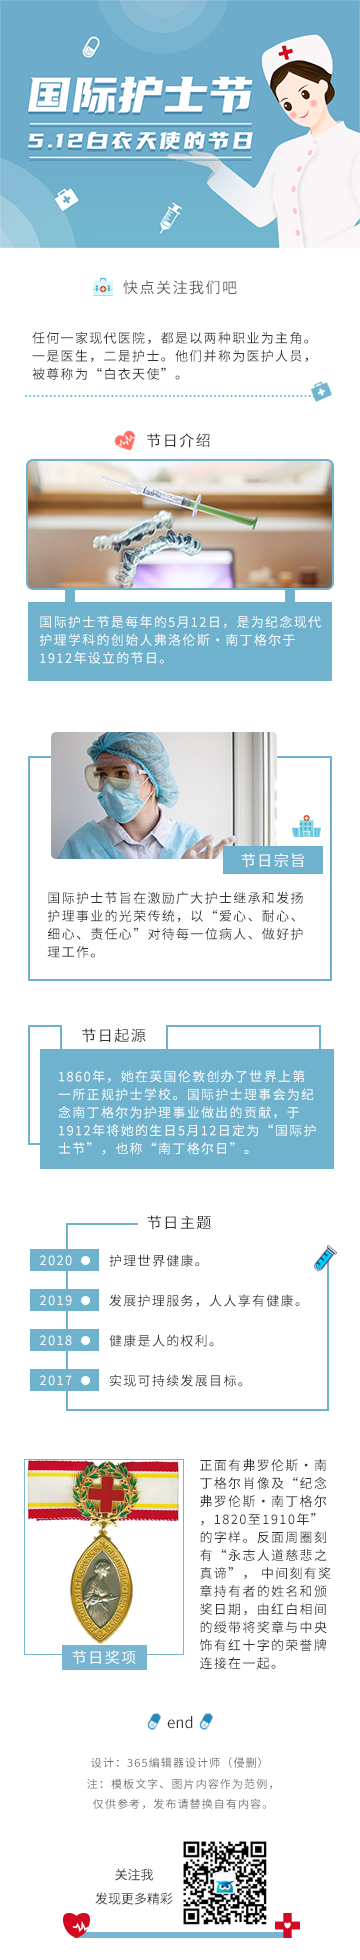 国际护士节简约gif模板蓝色5.12